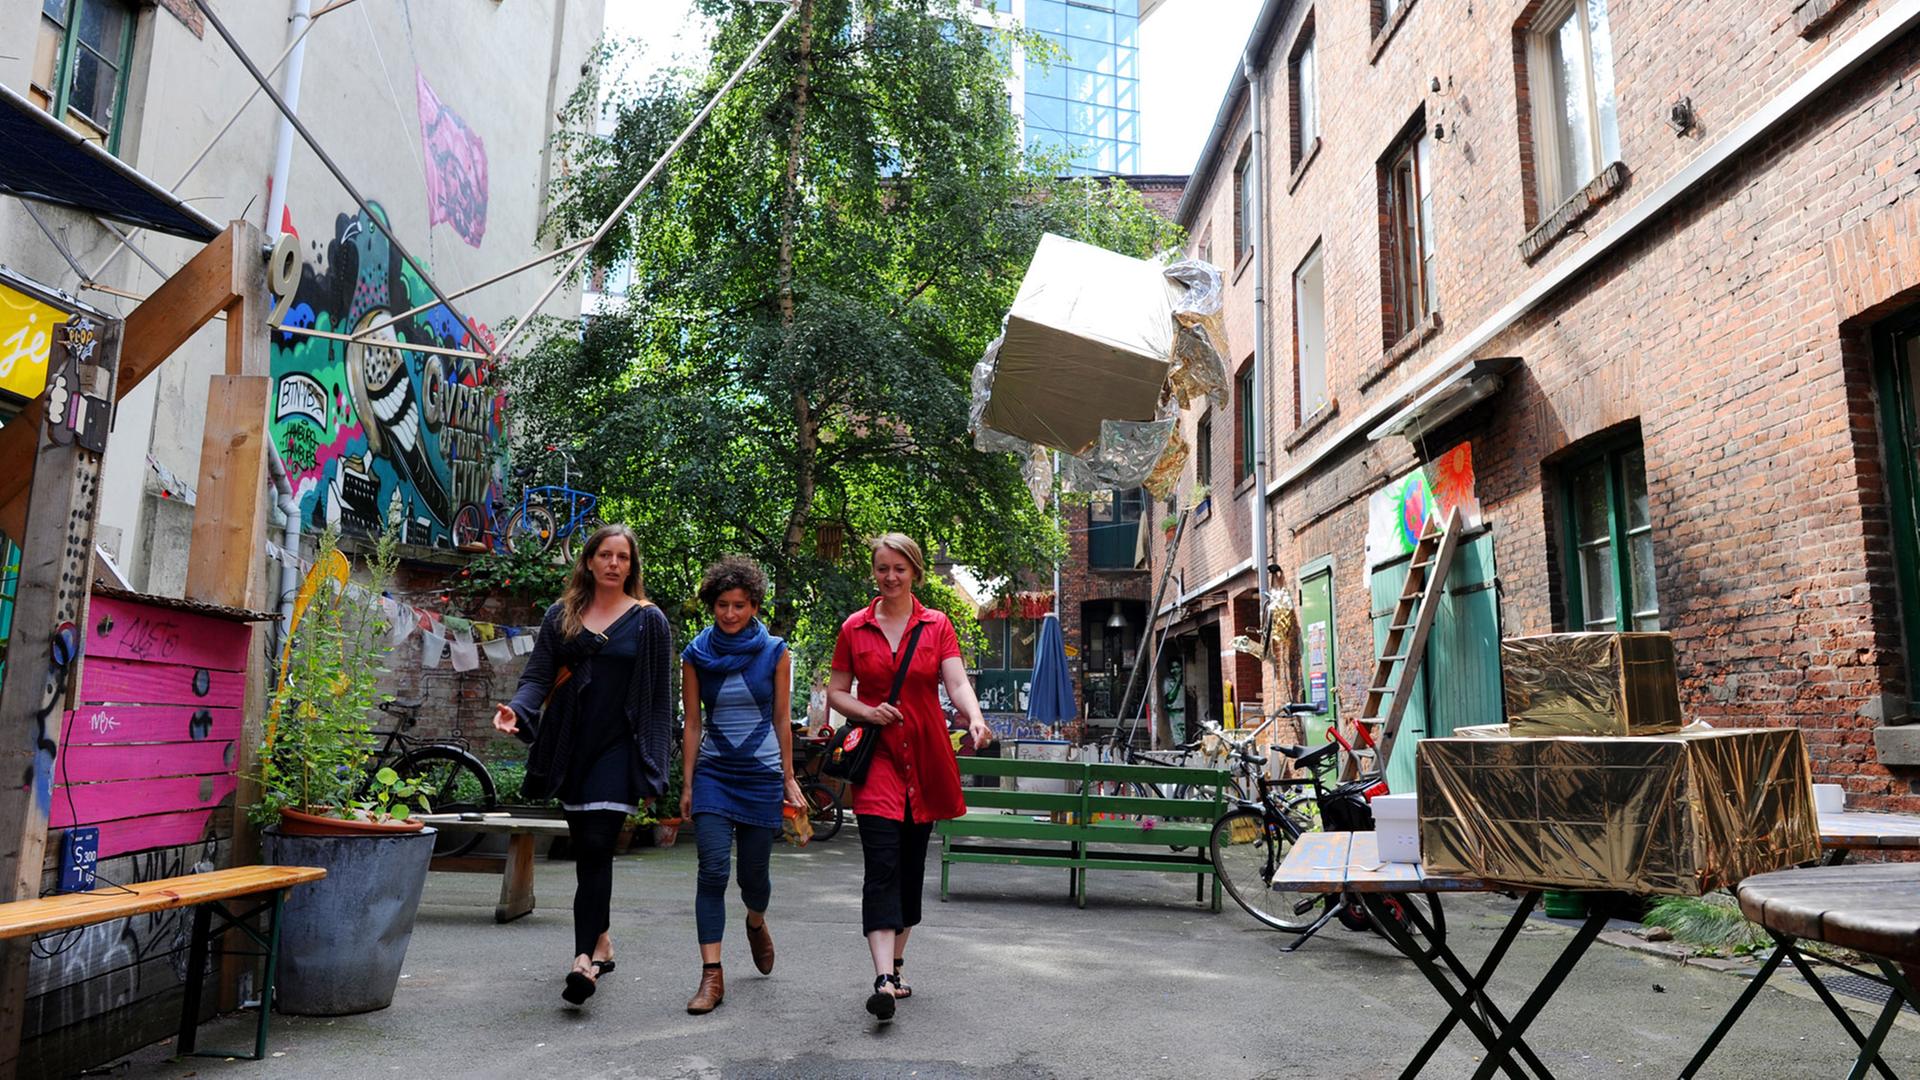 Drei Frauen laufen nebeneinander durch einen allerlei buten Gegenständen bestückten Hof, rundherum Altbauten.